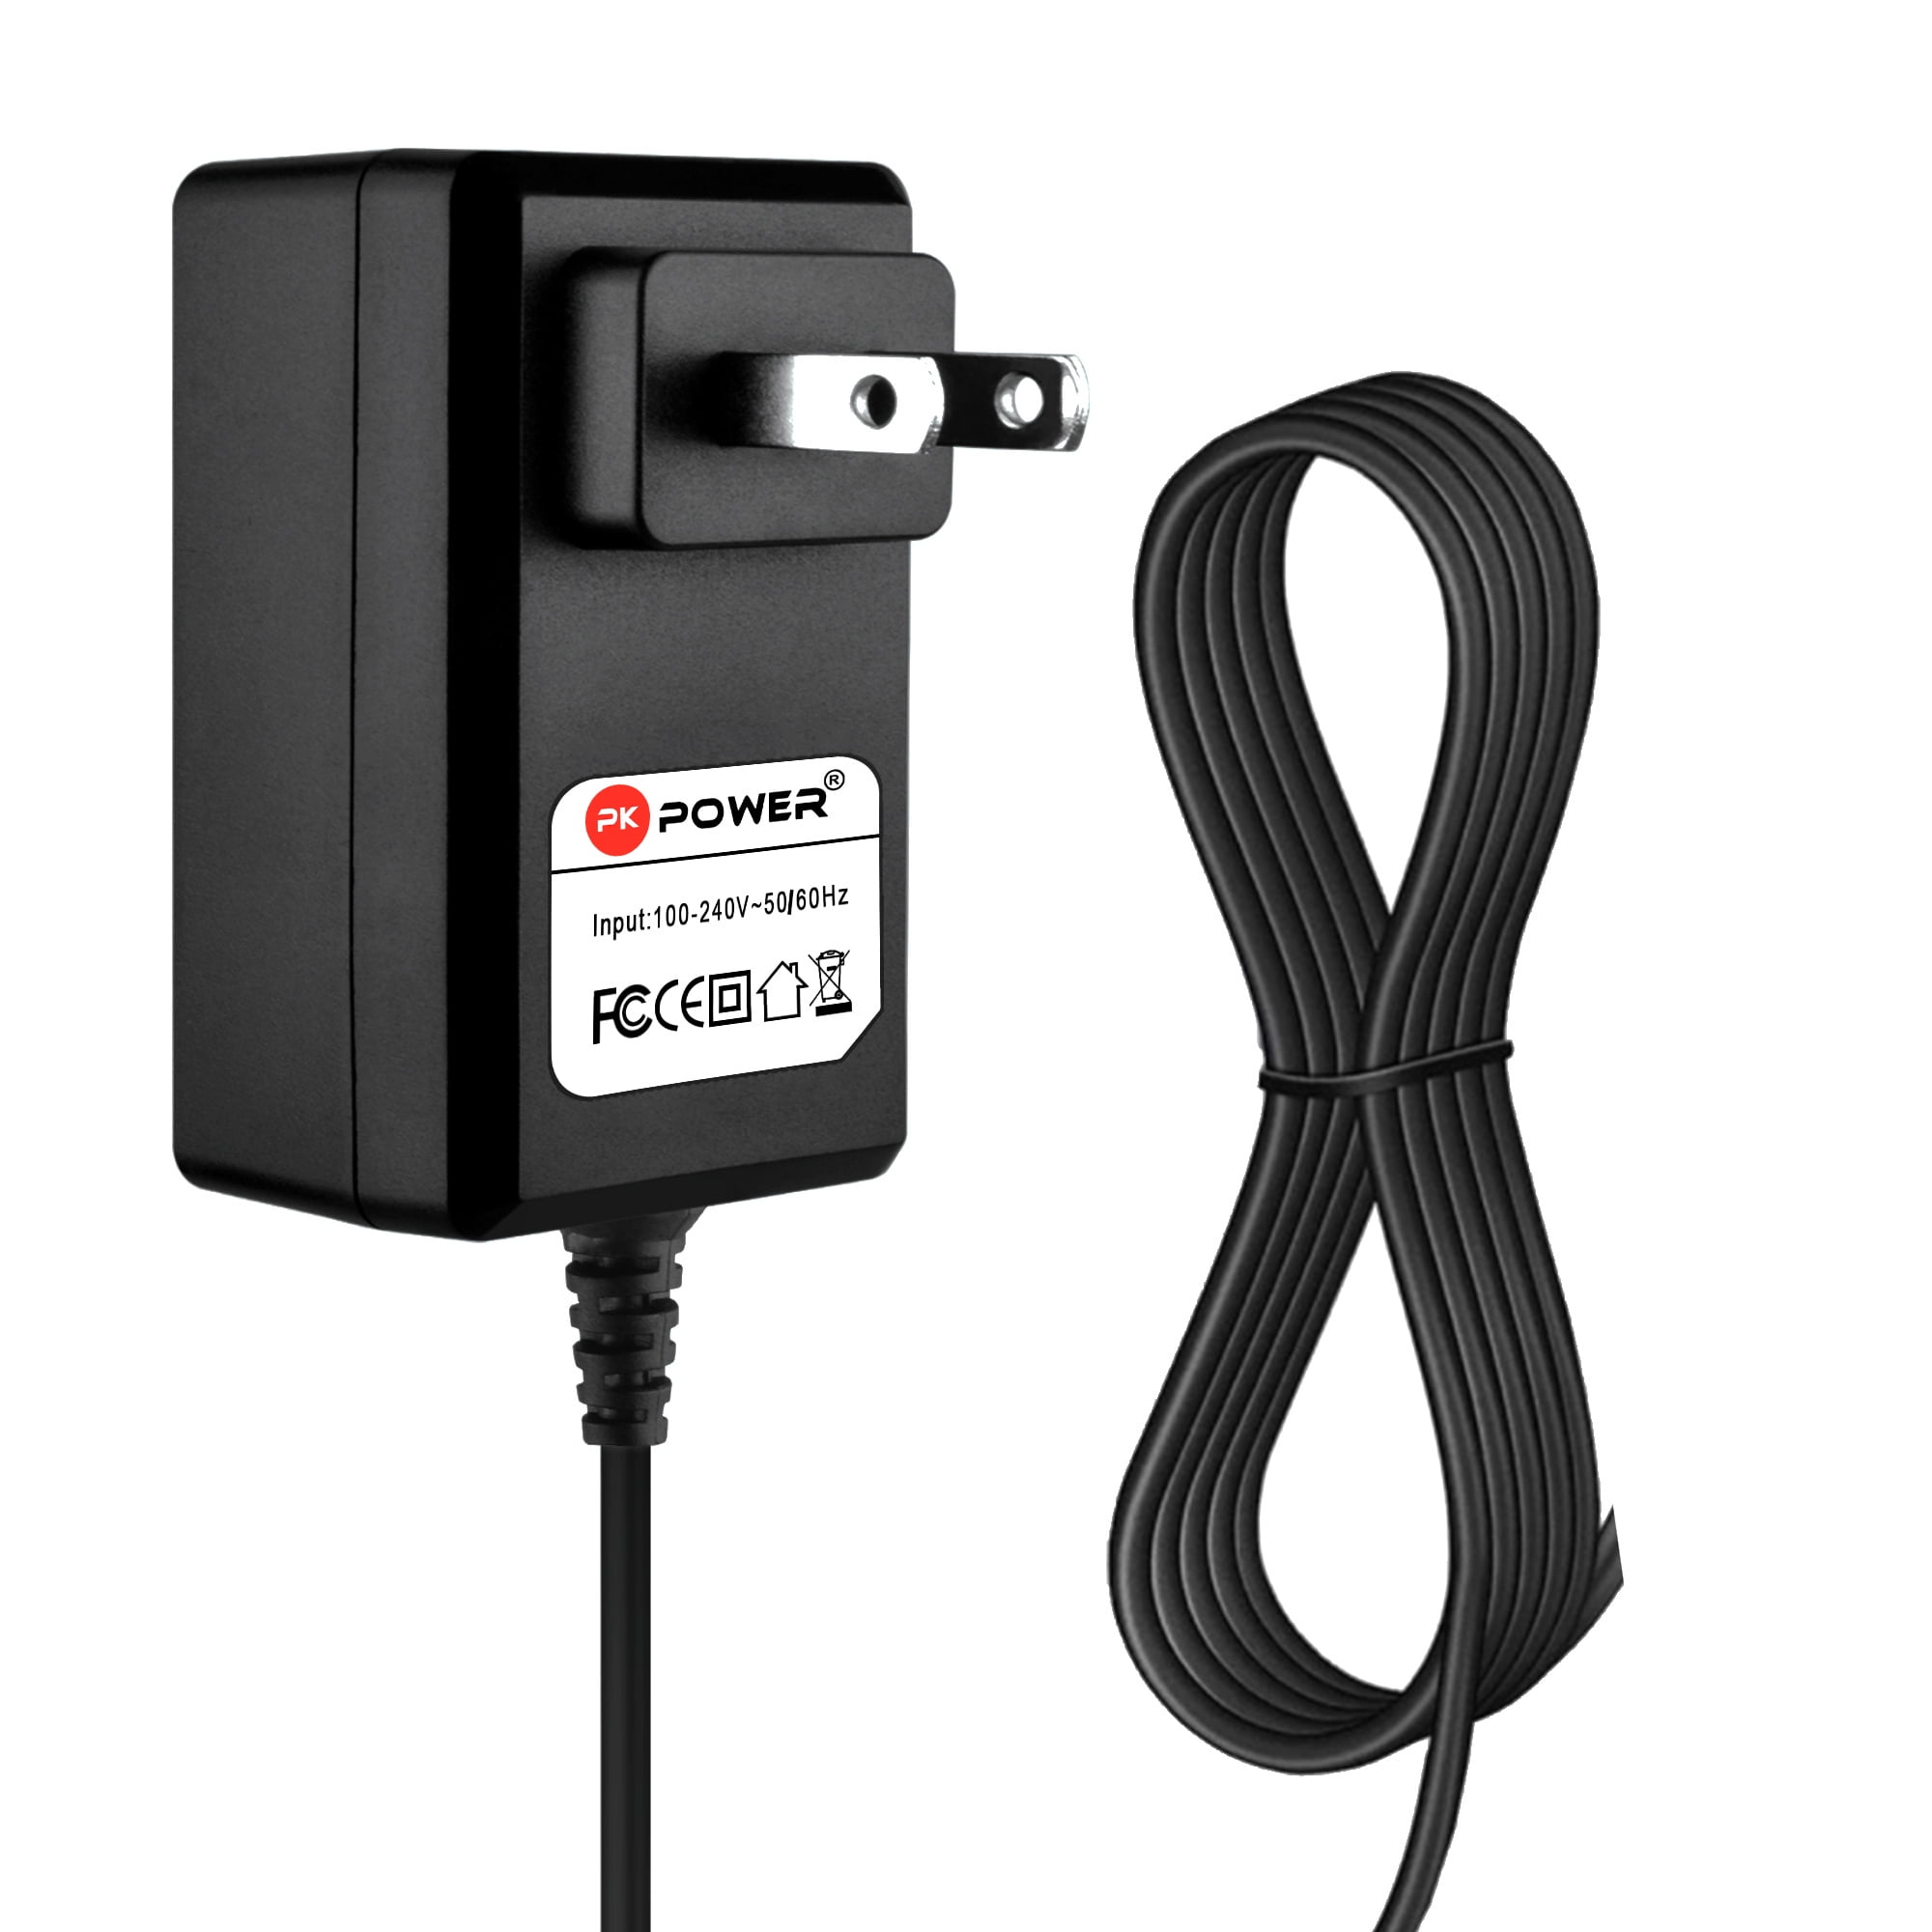 Power Supply/AC Adapter for Yamaha Portatone PSR-275 PSR-248 PSR-170 PSR-37 *121 